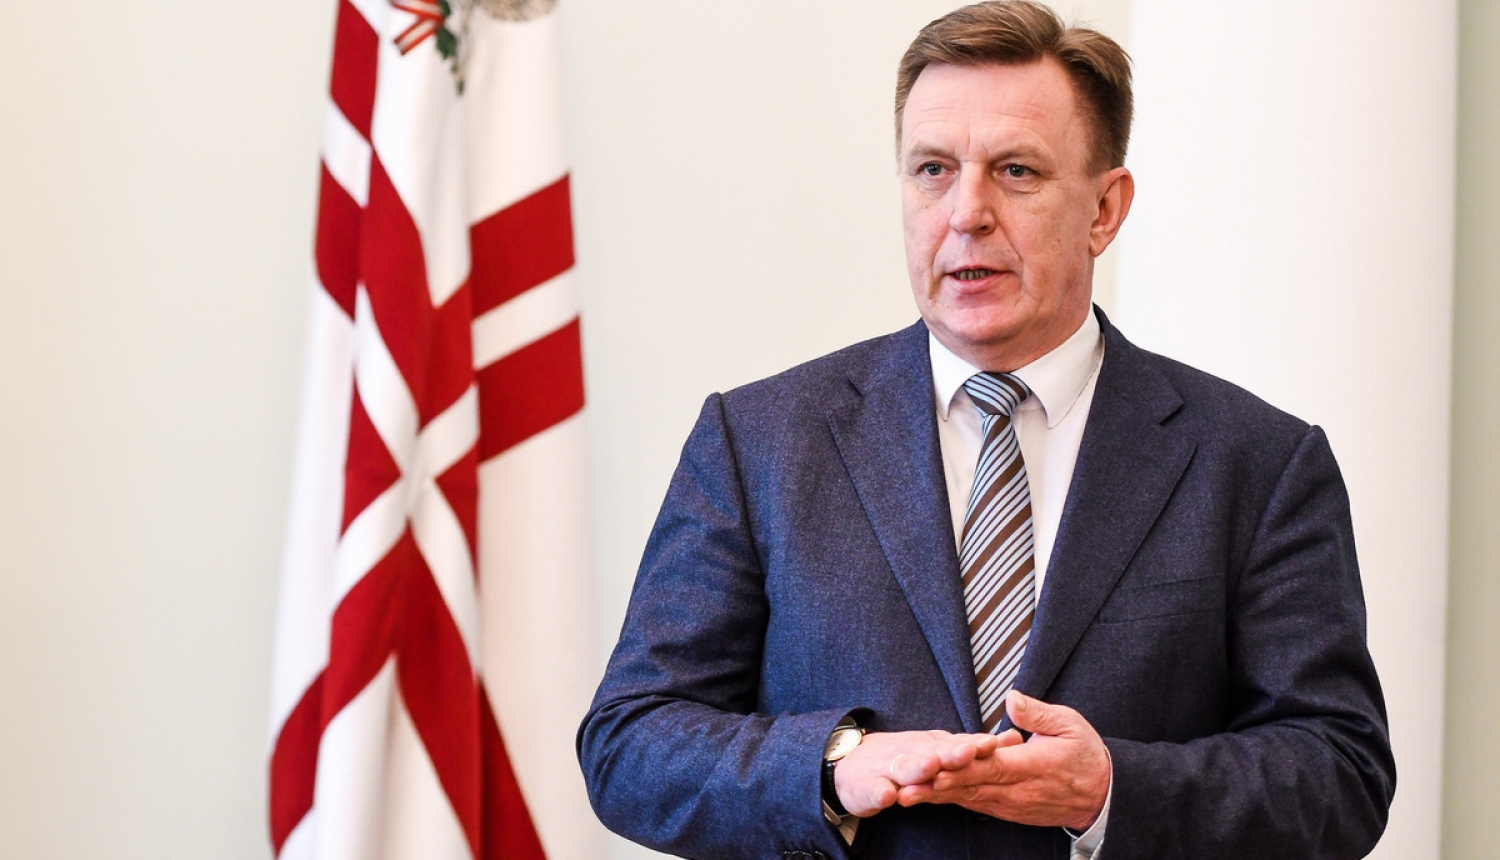 Ministru prezidenta Māra Kučinska paziņojums par situāciju Latvijas Bankā